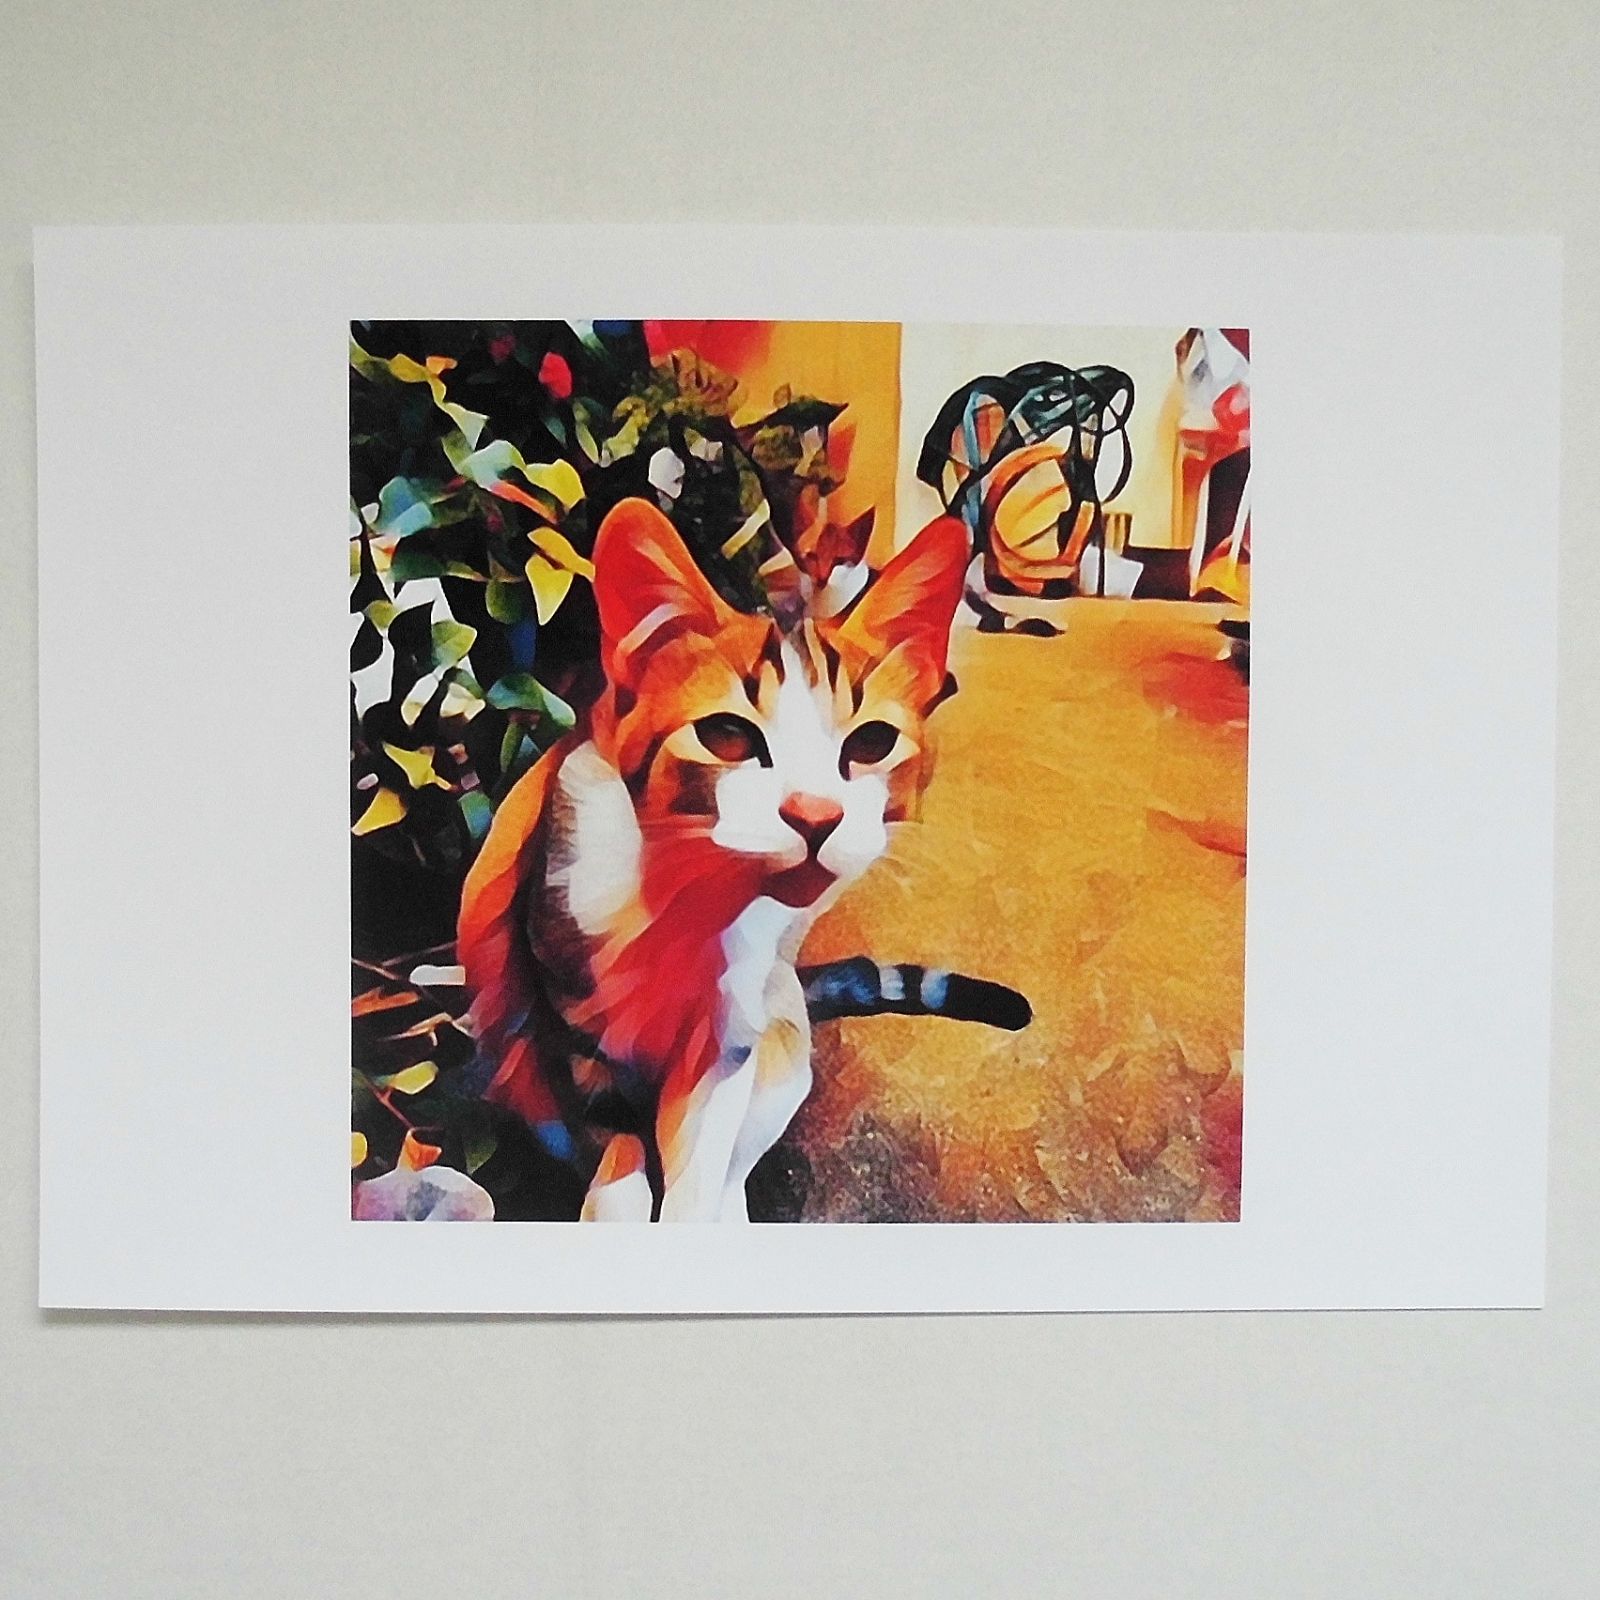 沖縄 与那城 / 琉球猫 デジタル版画 A4サイズ 22.03.04 b - メルカリ